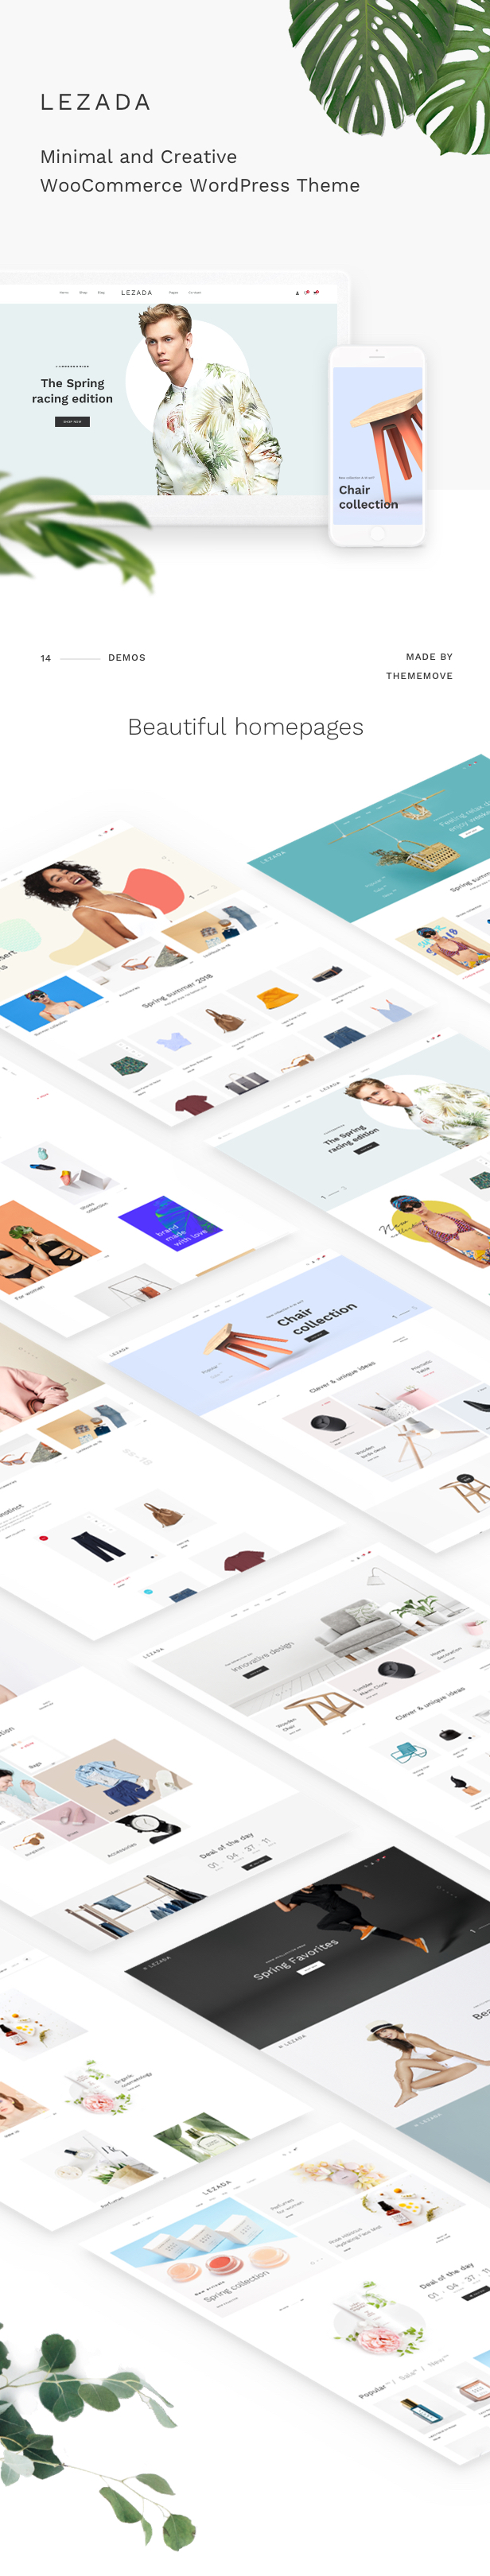 Fashion WooCommerce WordPress Layout - wunderschön gestaltete Homepages